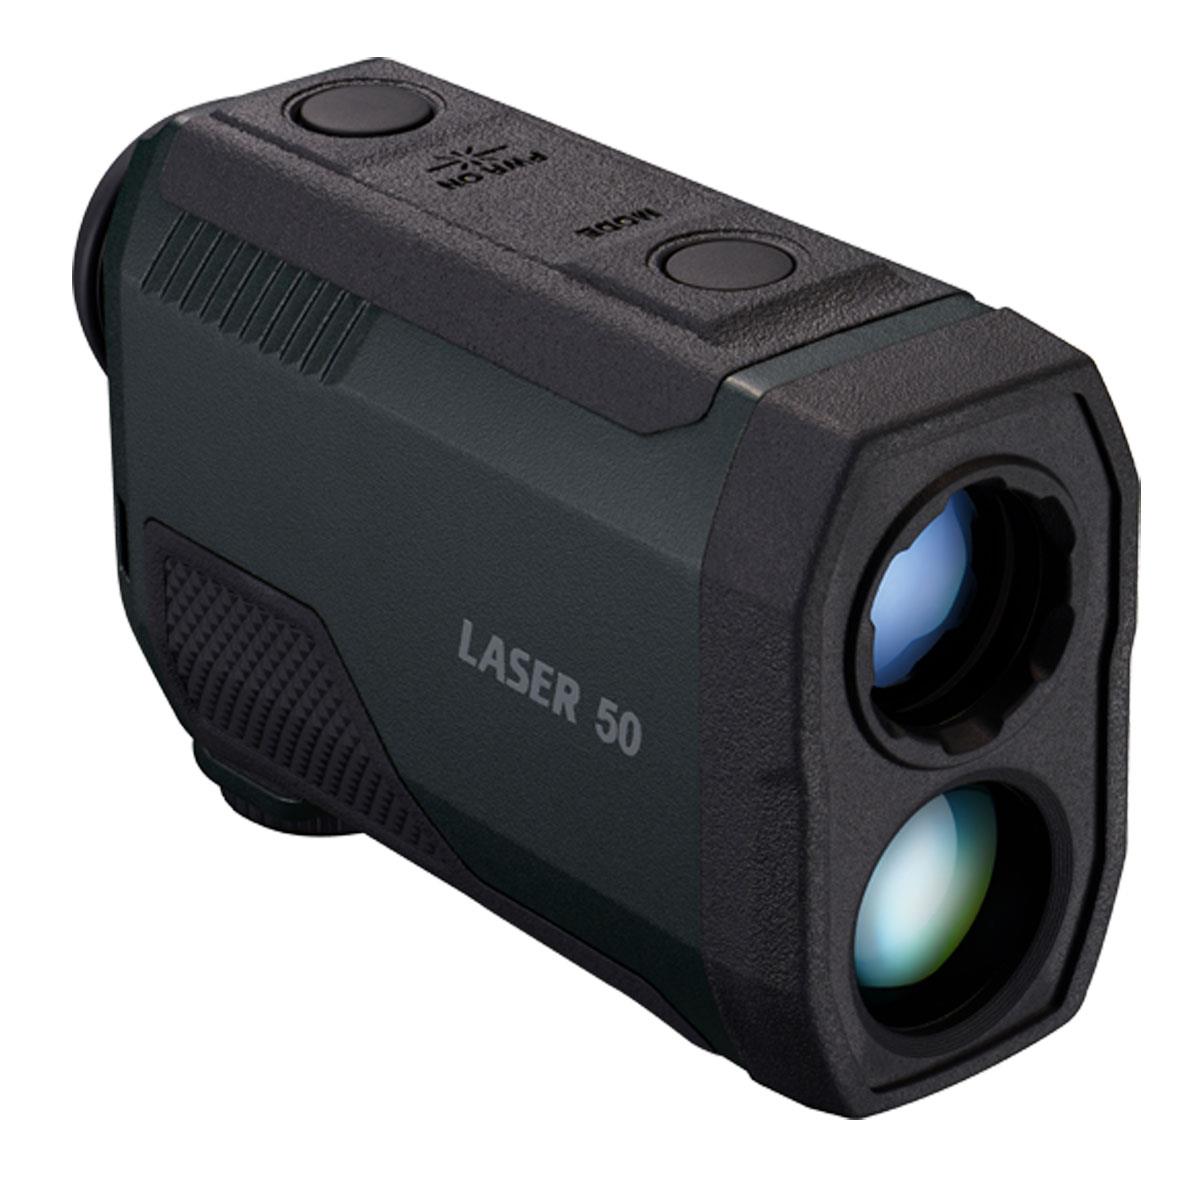 Image of Nikon LASER 50 6x Laser Rangefinder